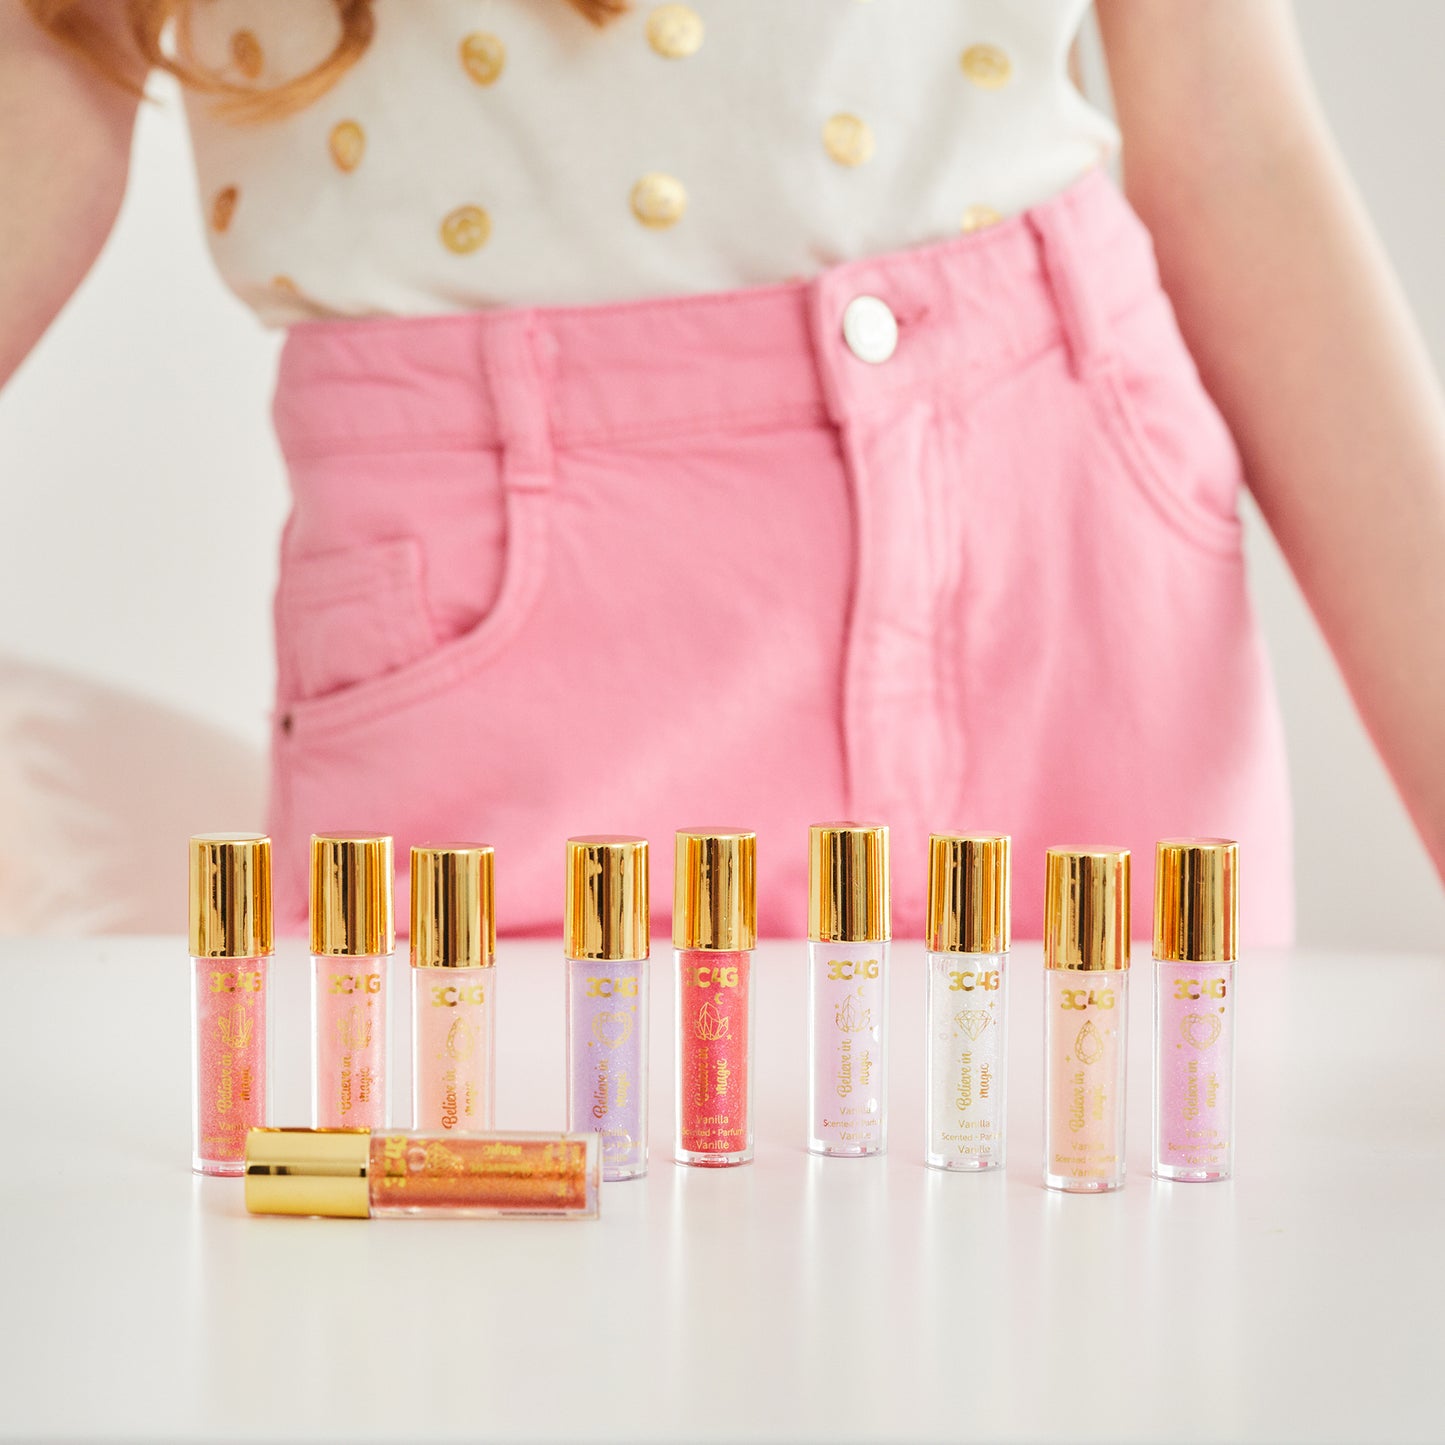 Pink & Gold Lip Gloss Set